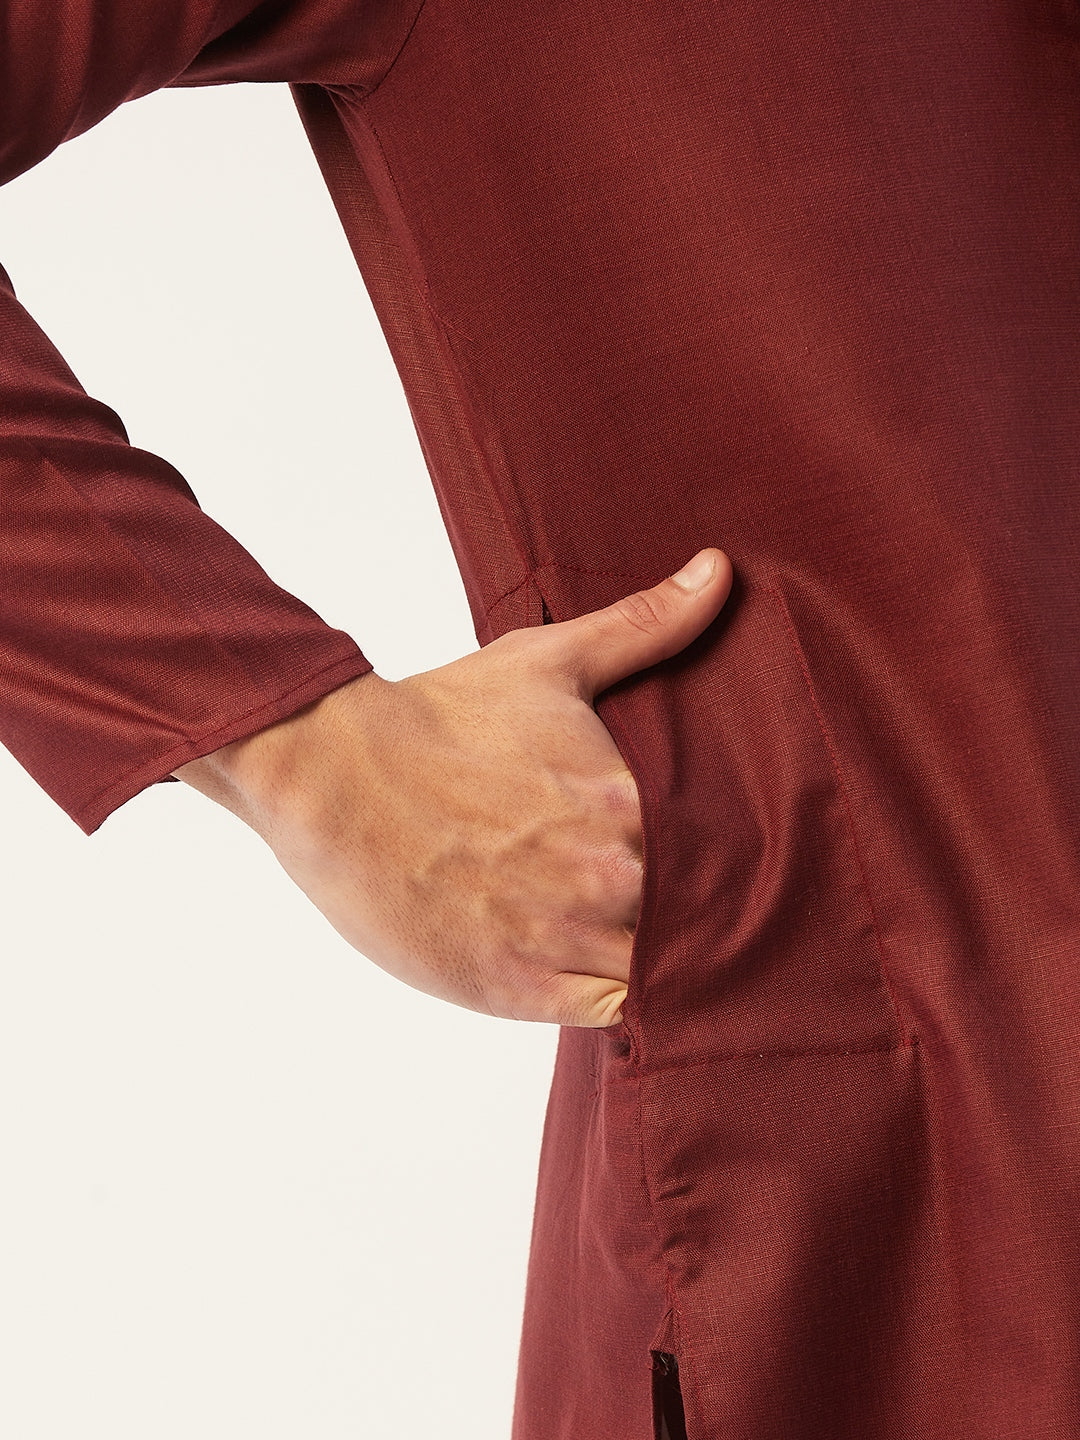 Men's Maroon Cotton Solid Kurta Pyjama ( JOKP 611 Maroon ) - Virat Fashions